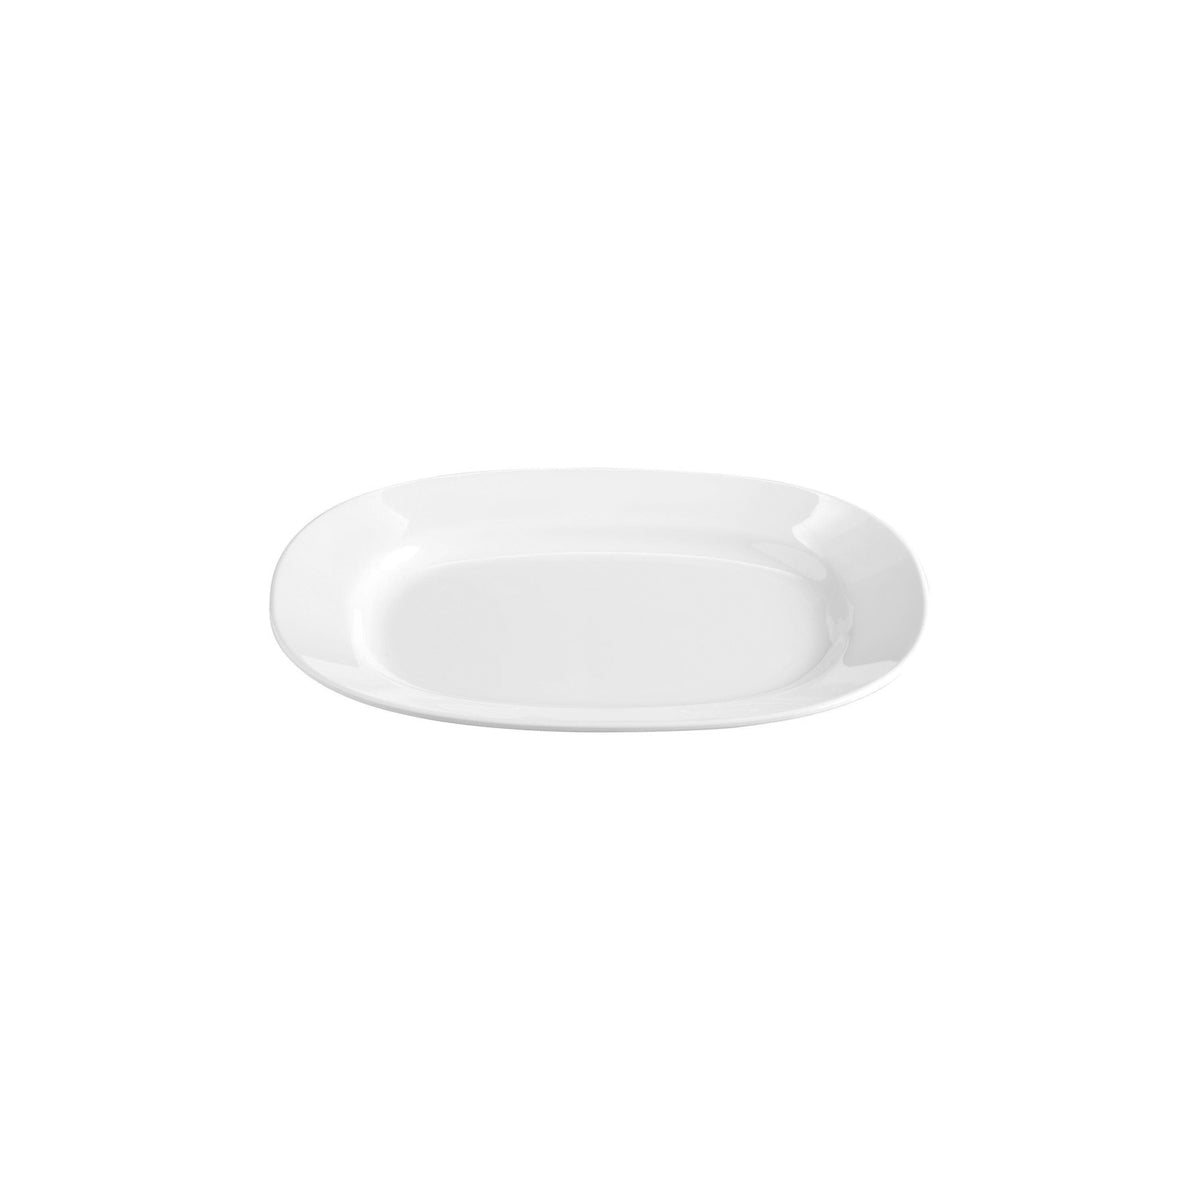 49304 Superware White Oval Platter Wide Rim 300x245mm Tomkin Australia Hospitality Supplies